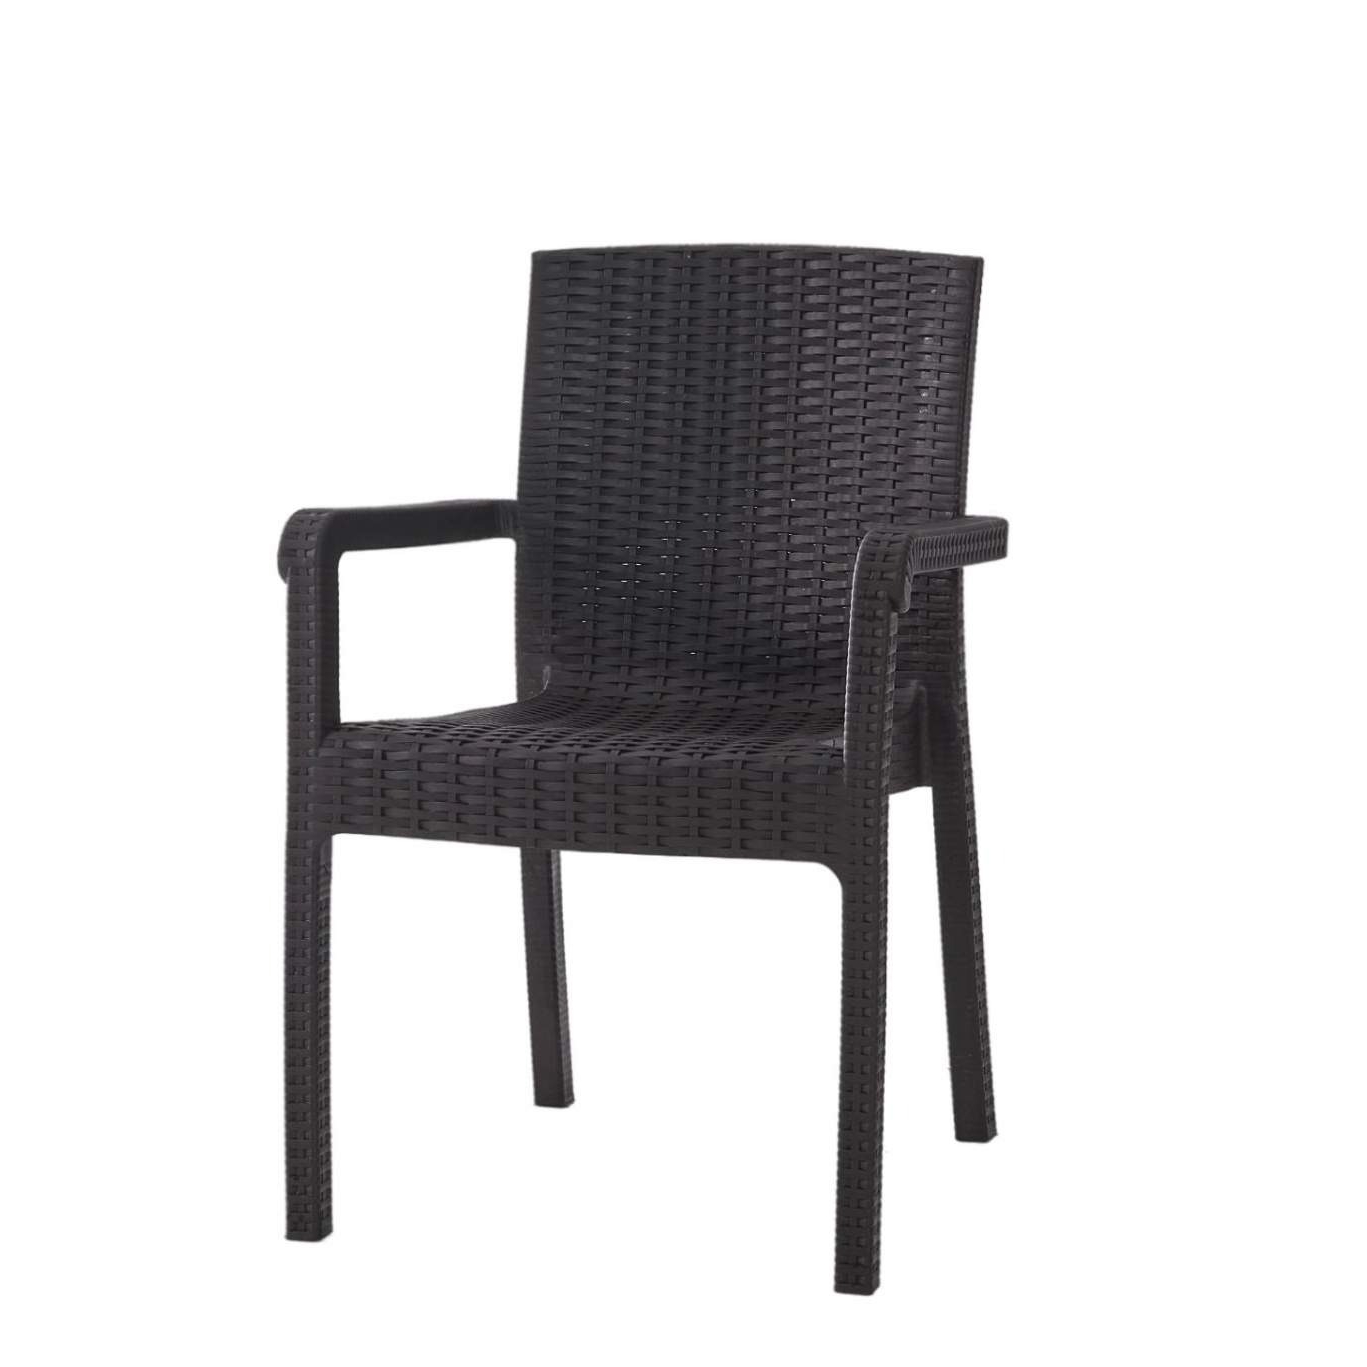 Кресло Heniver Vector темно-коричневое 58х45х85 см кресло rainbow siena rattan темно коричневое 54х58х86 см